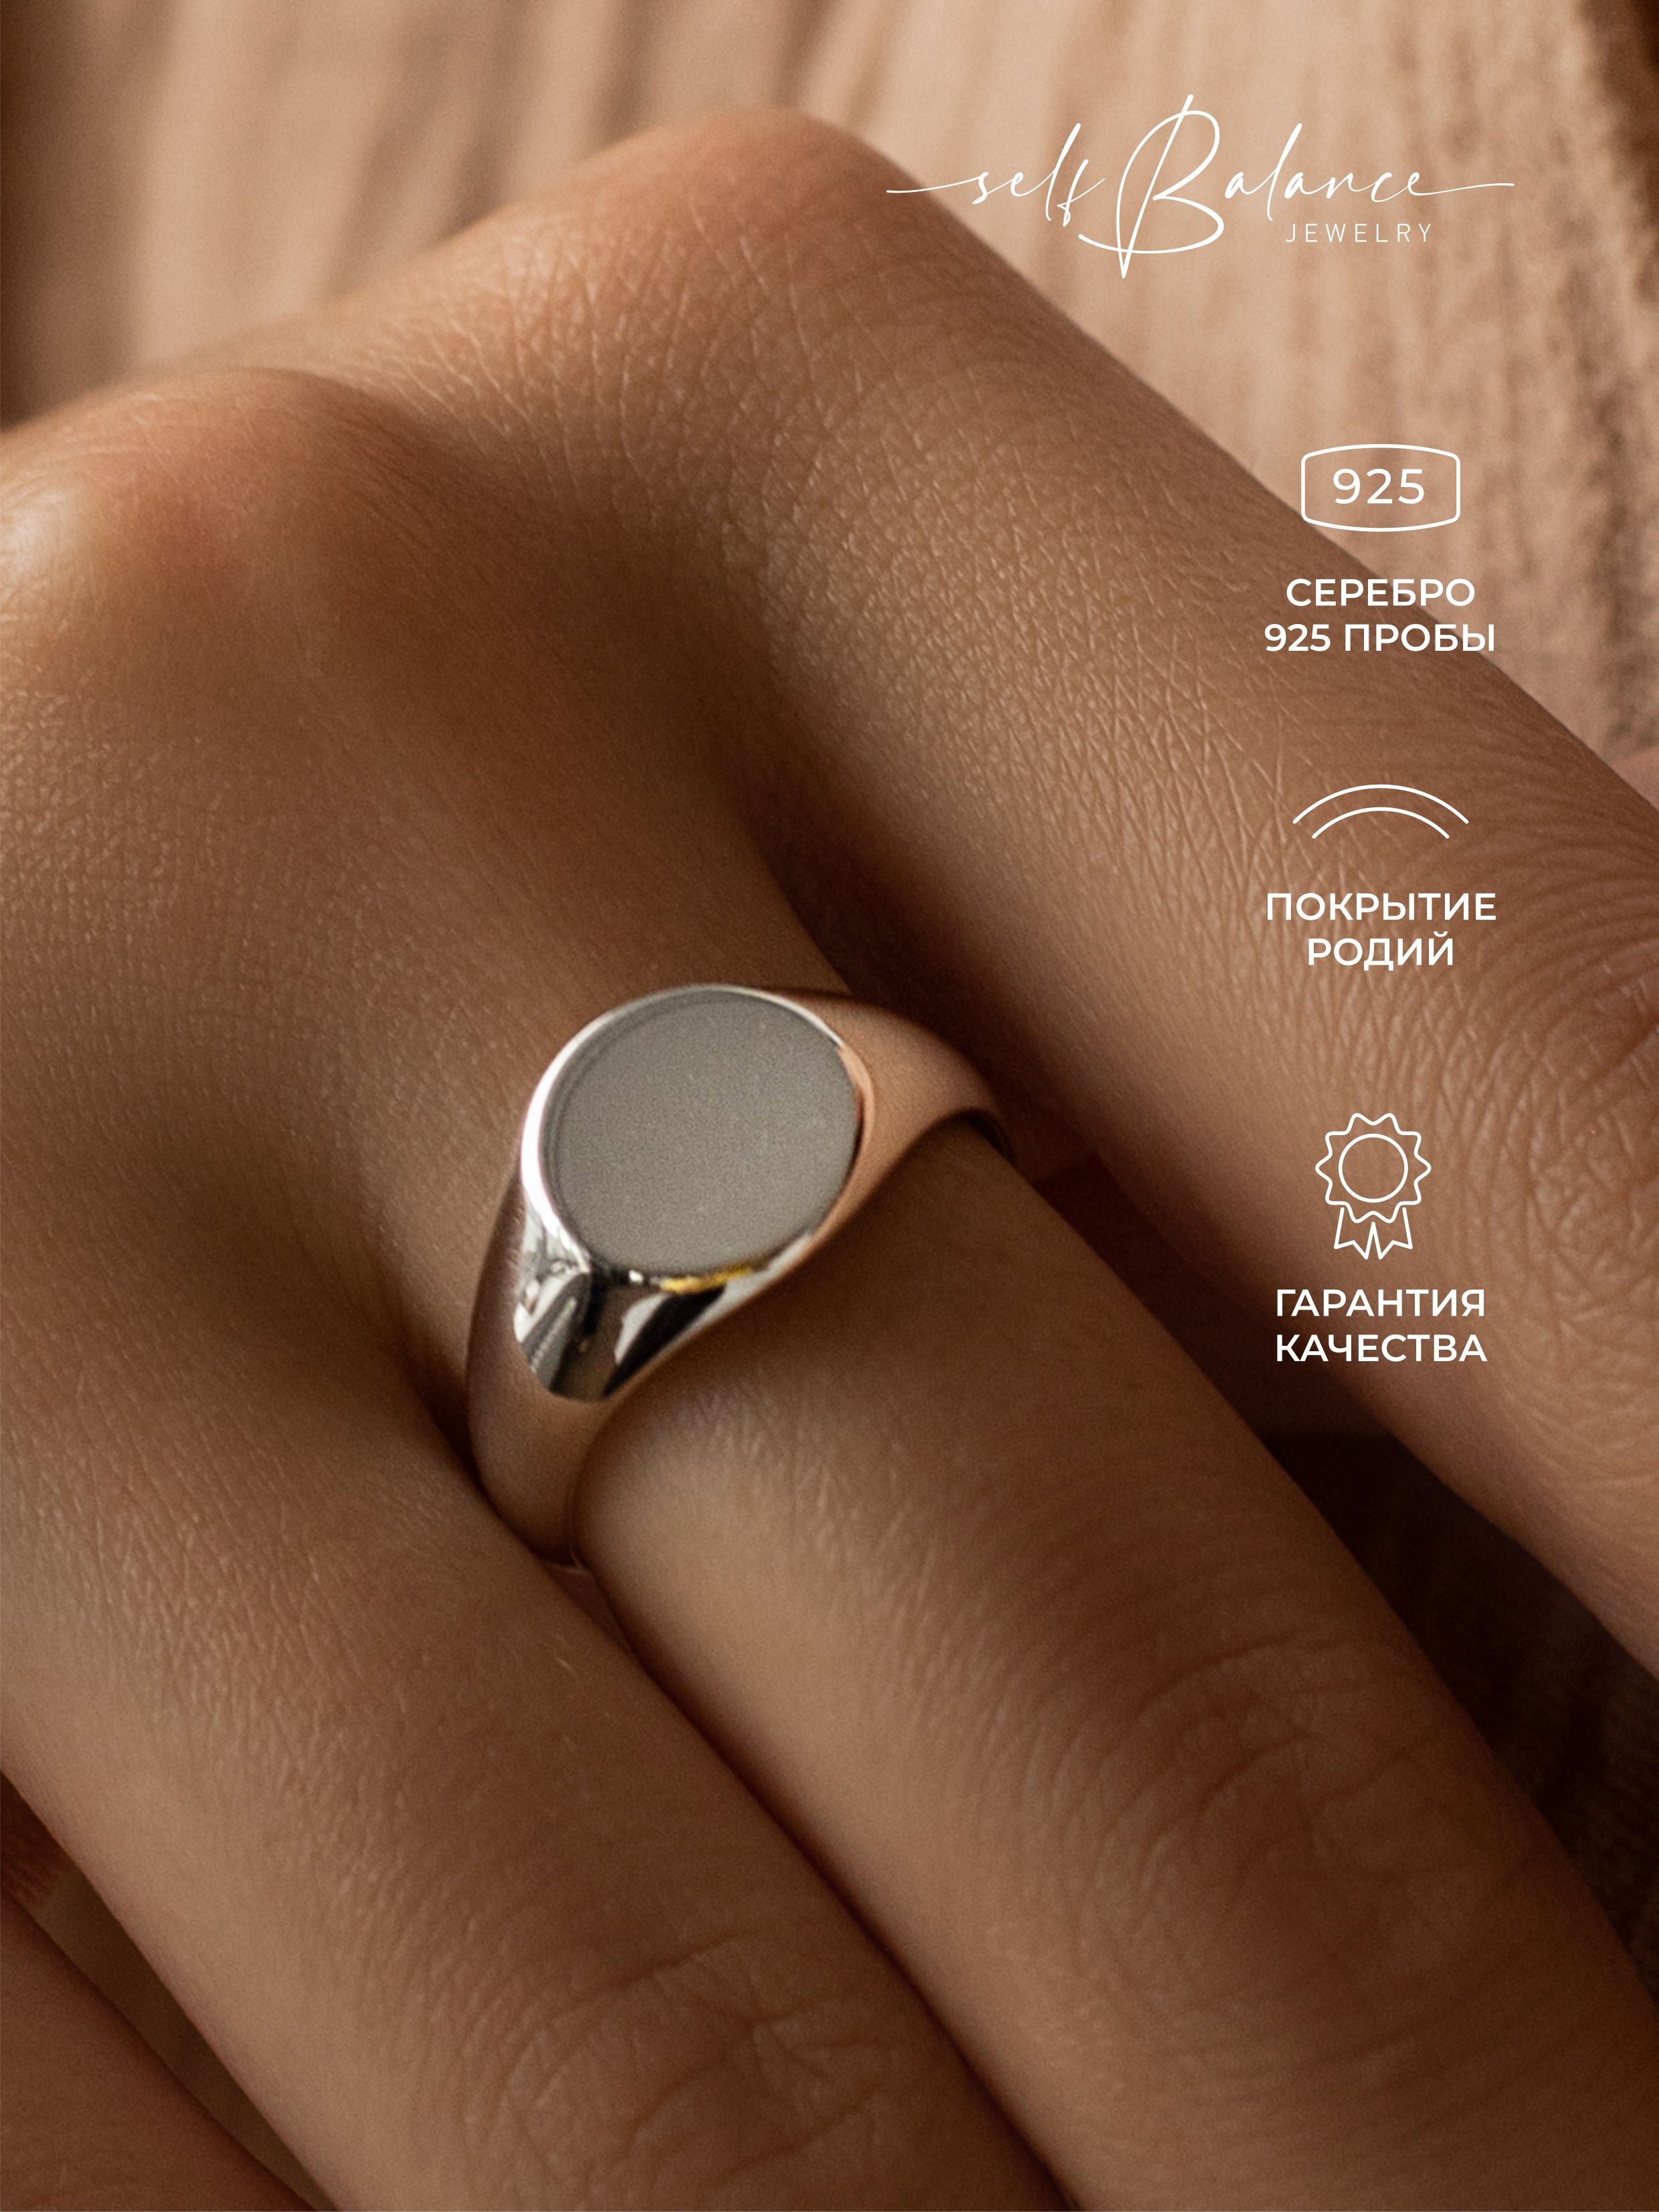 Мужские кольца из ювелирной стали: эффектные украшения с оригинальным дизайном